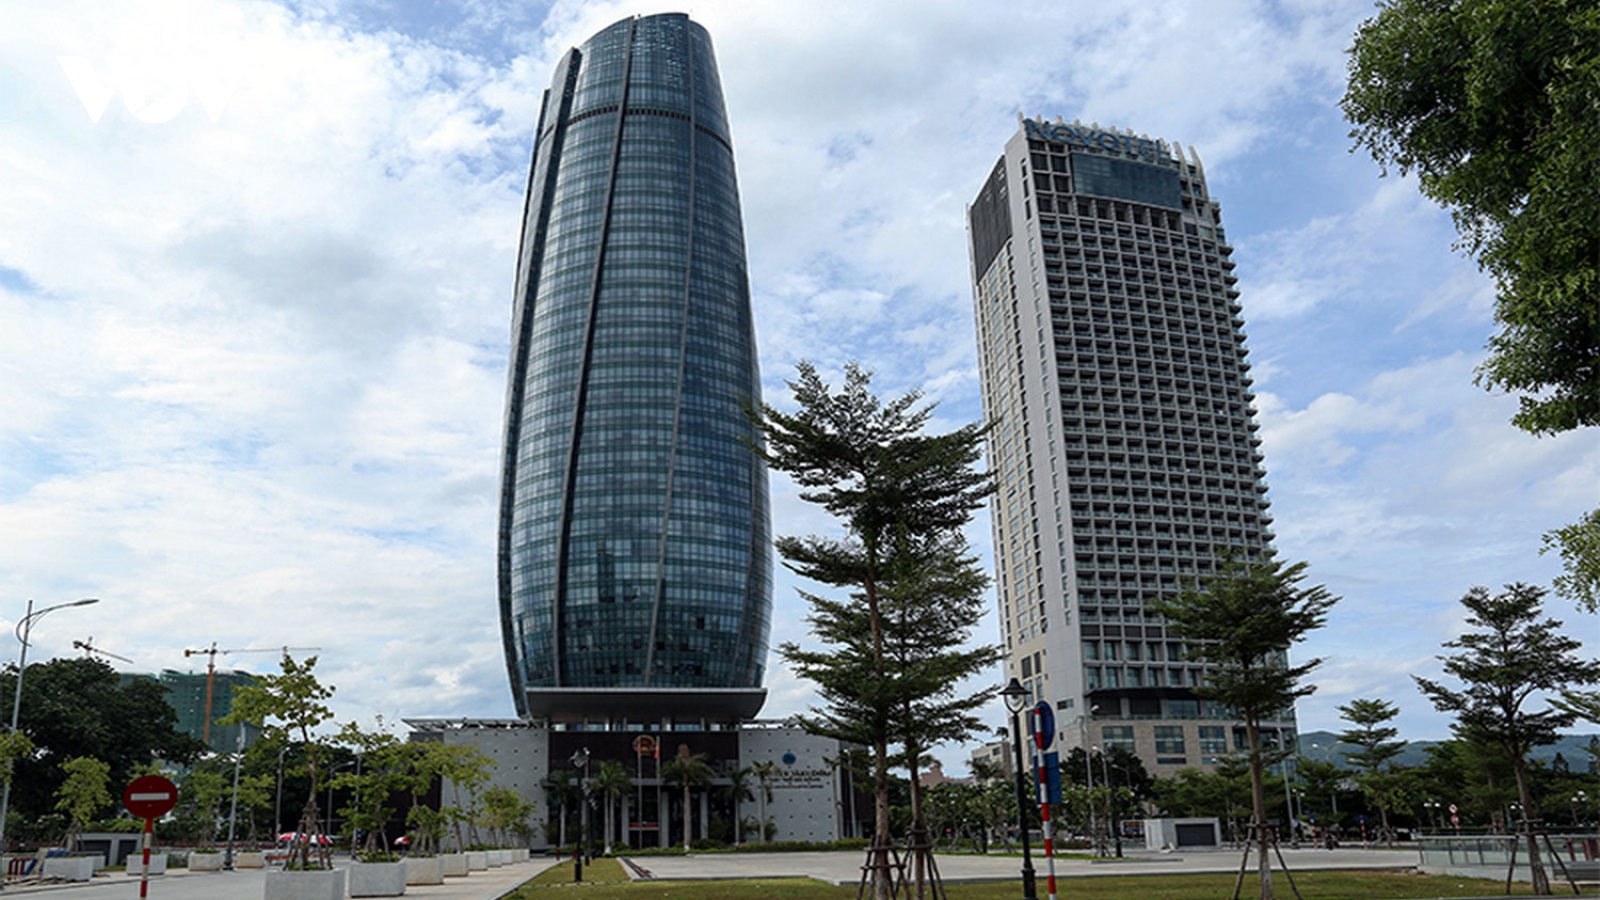 Trung tâm tài chính khu vực: Động lực thúc đẩy kinh tế Đà Nẵng